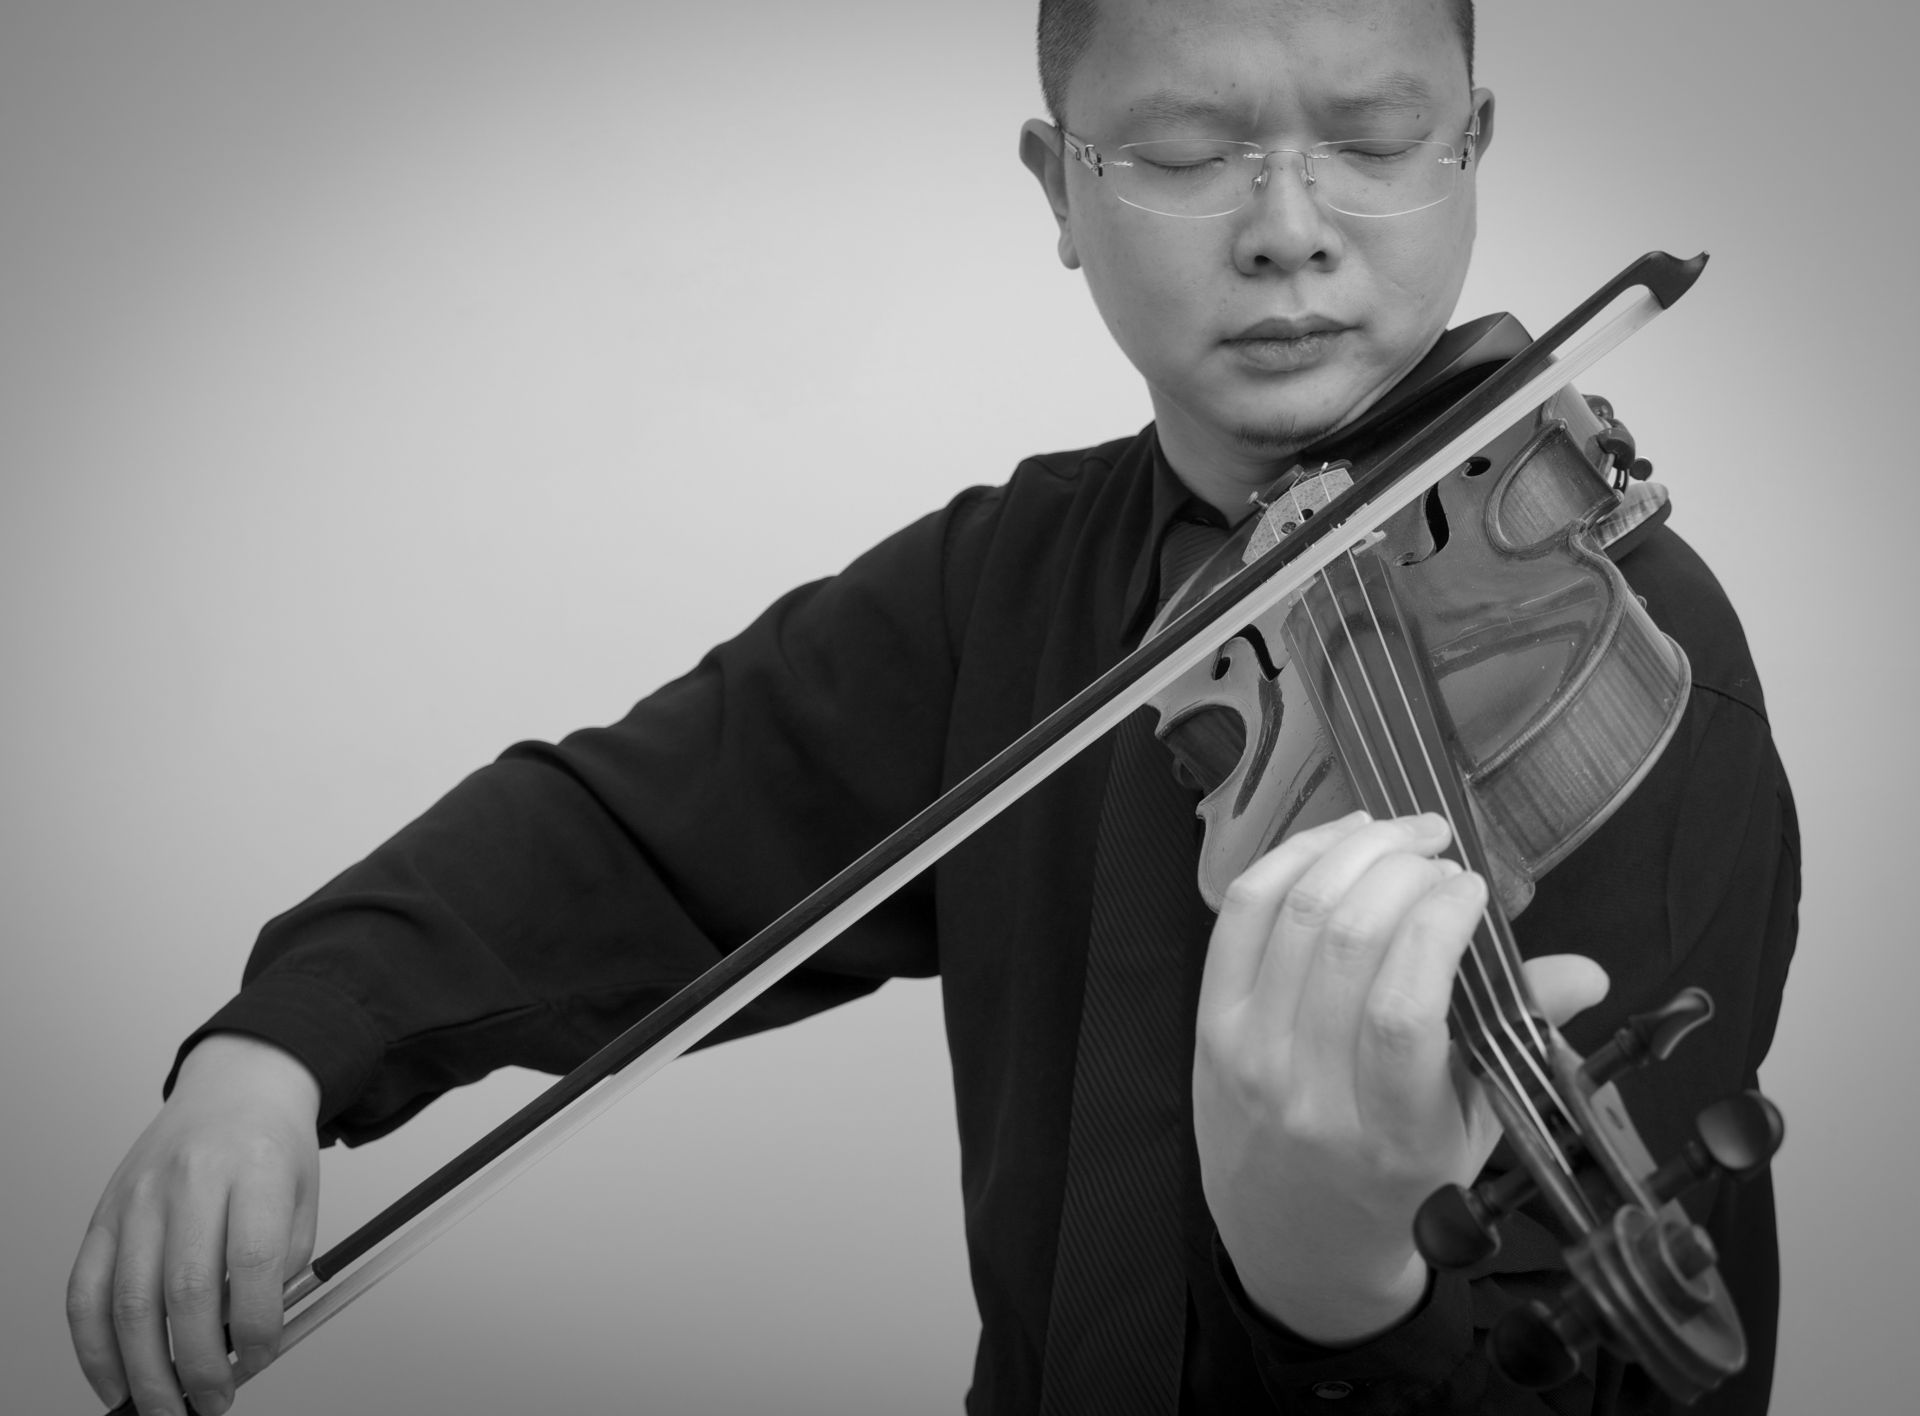 小提琴教學懶人包，學小提琴之前必看的5個重點 @
			
				張偉軒小提琴
			
		